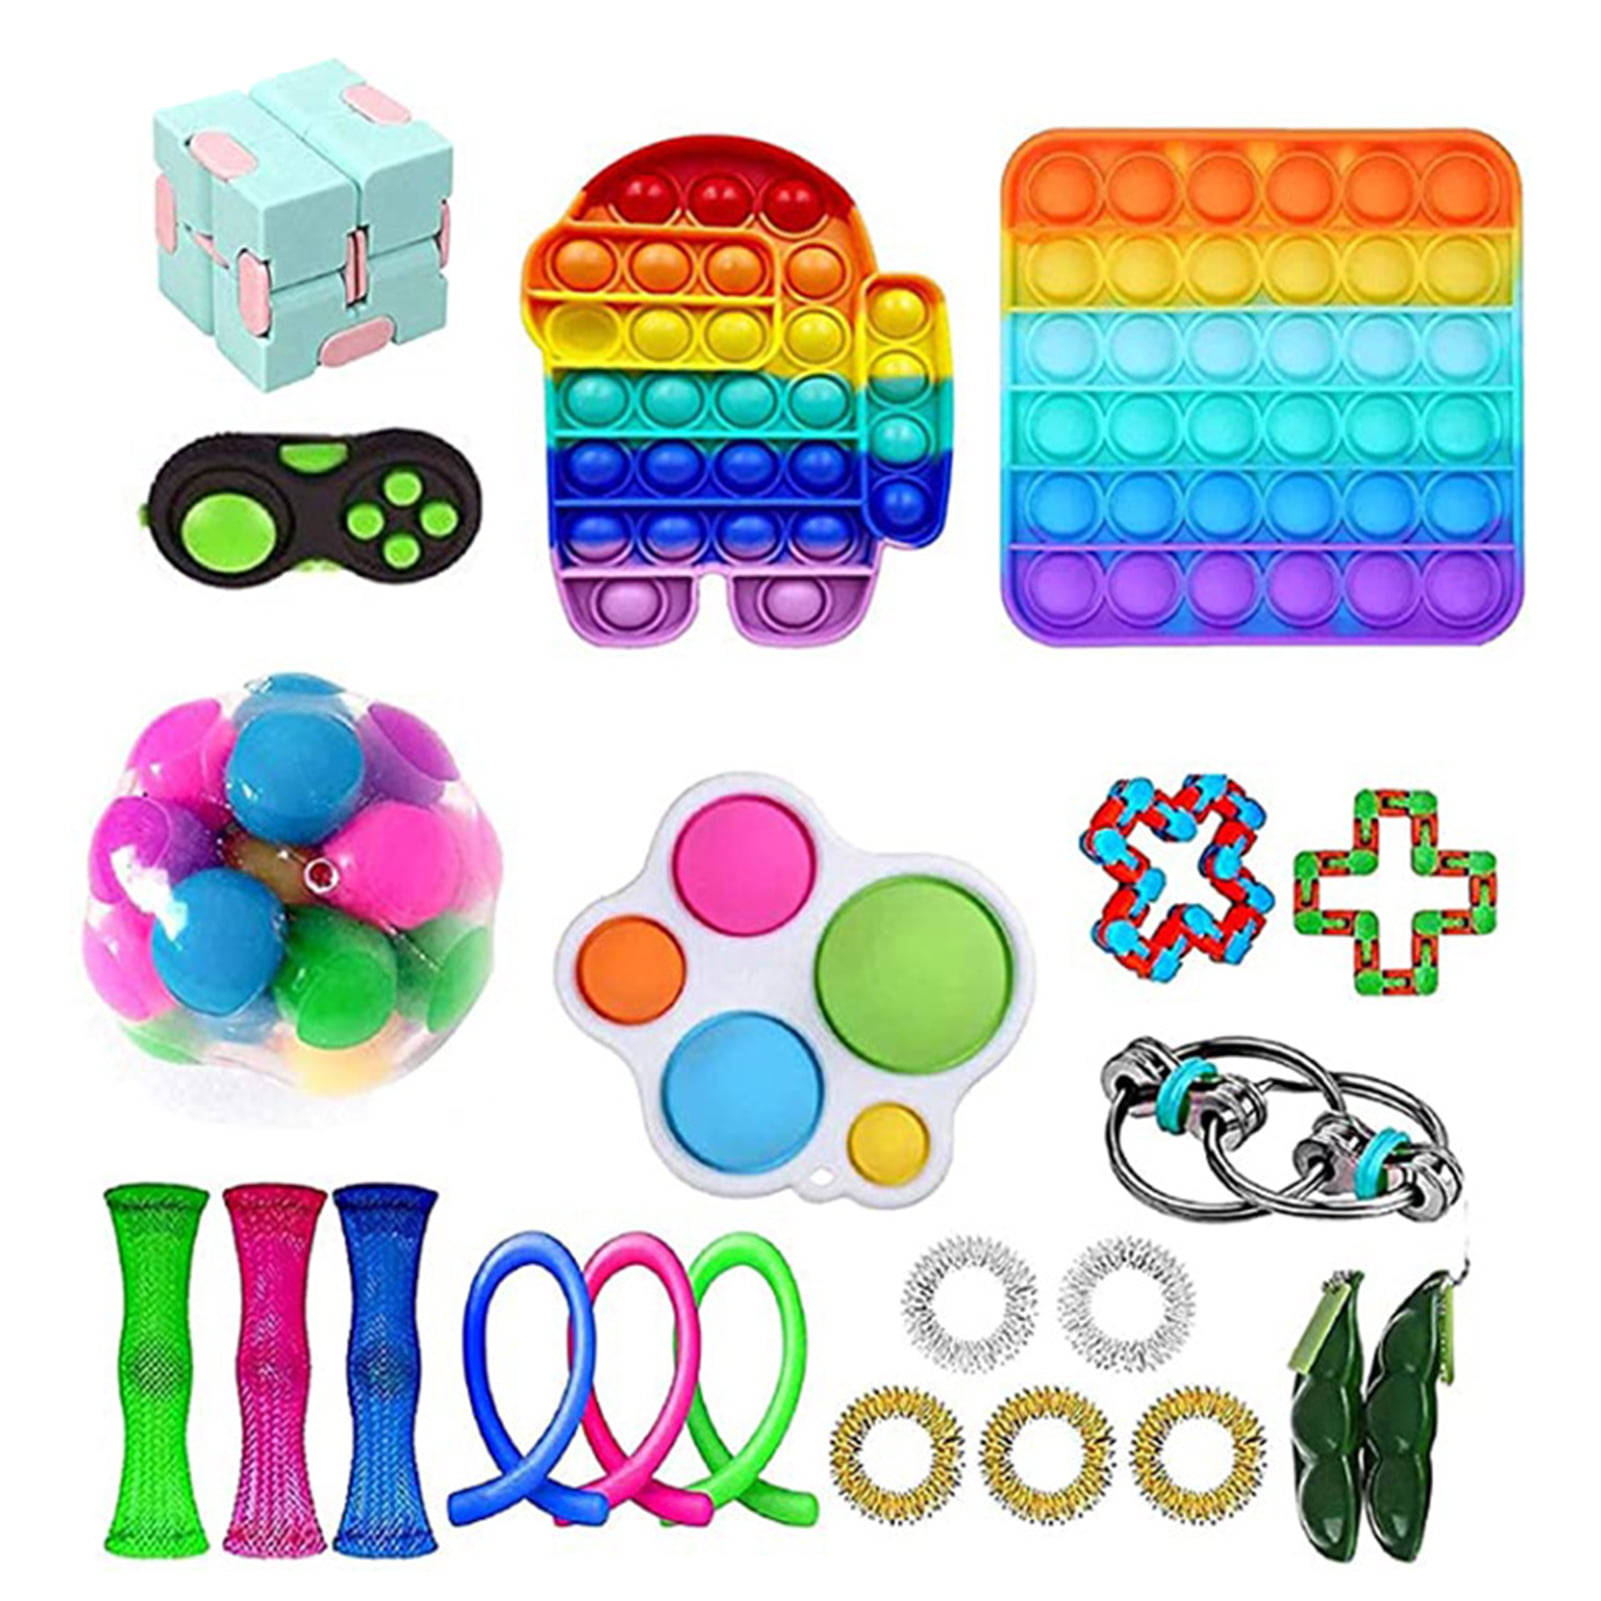 Details about   Fidget Sensory Toys Set Pops Bubbles Stress Relief Push It Fidget Toy Pack Set 